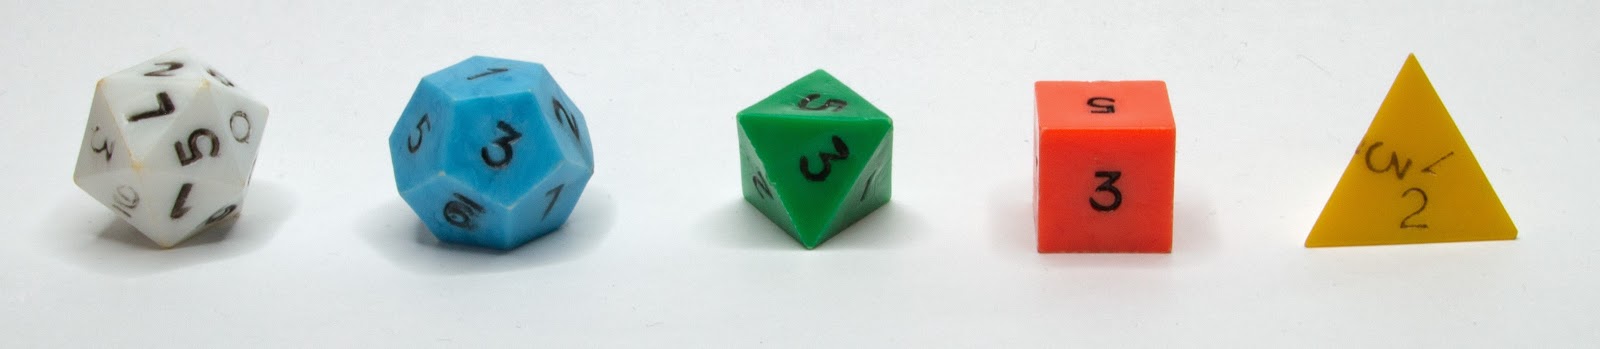 original-basic-dnd-dice-set.jpg